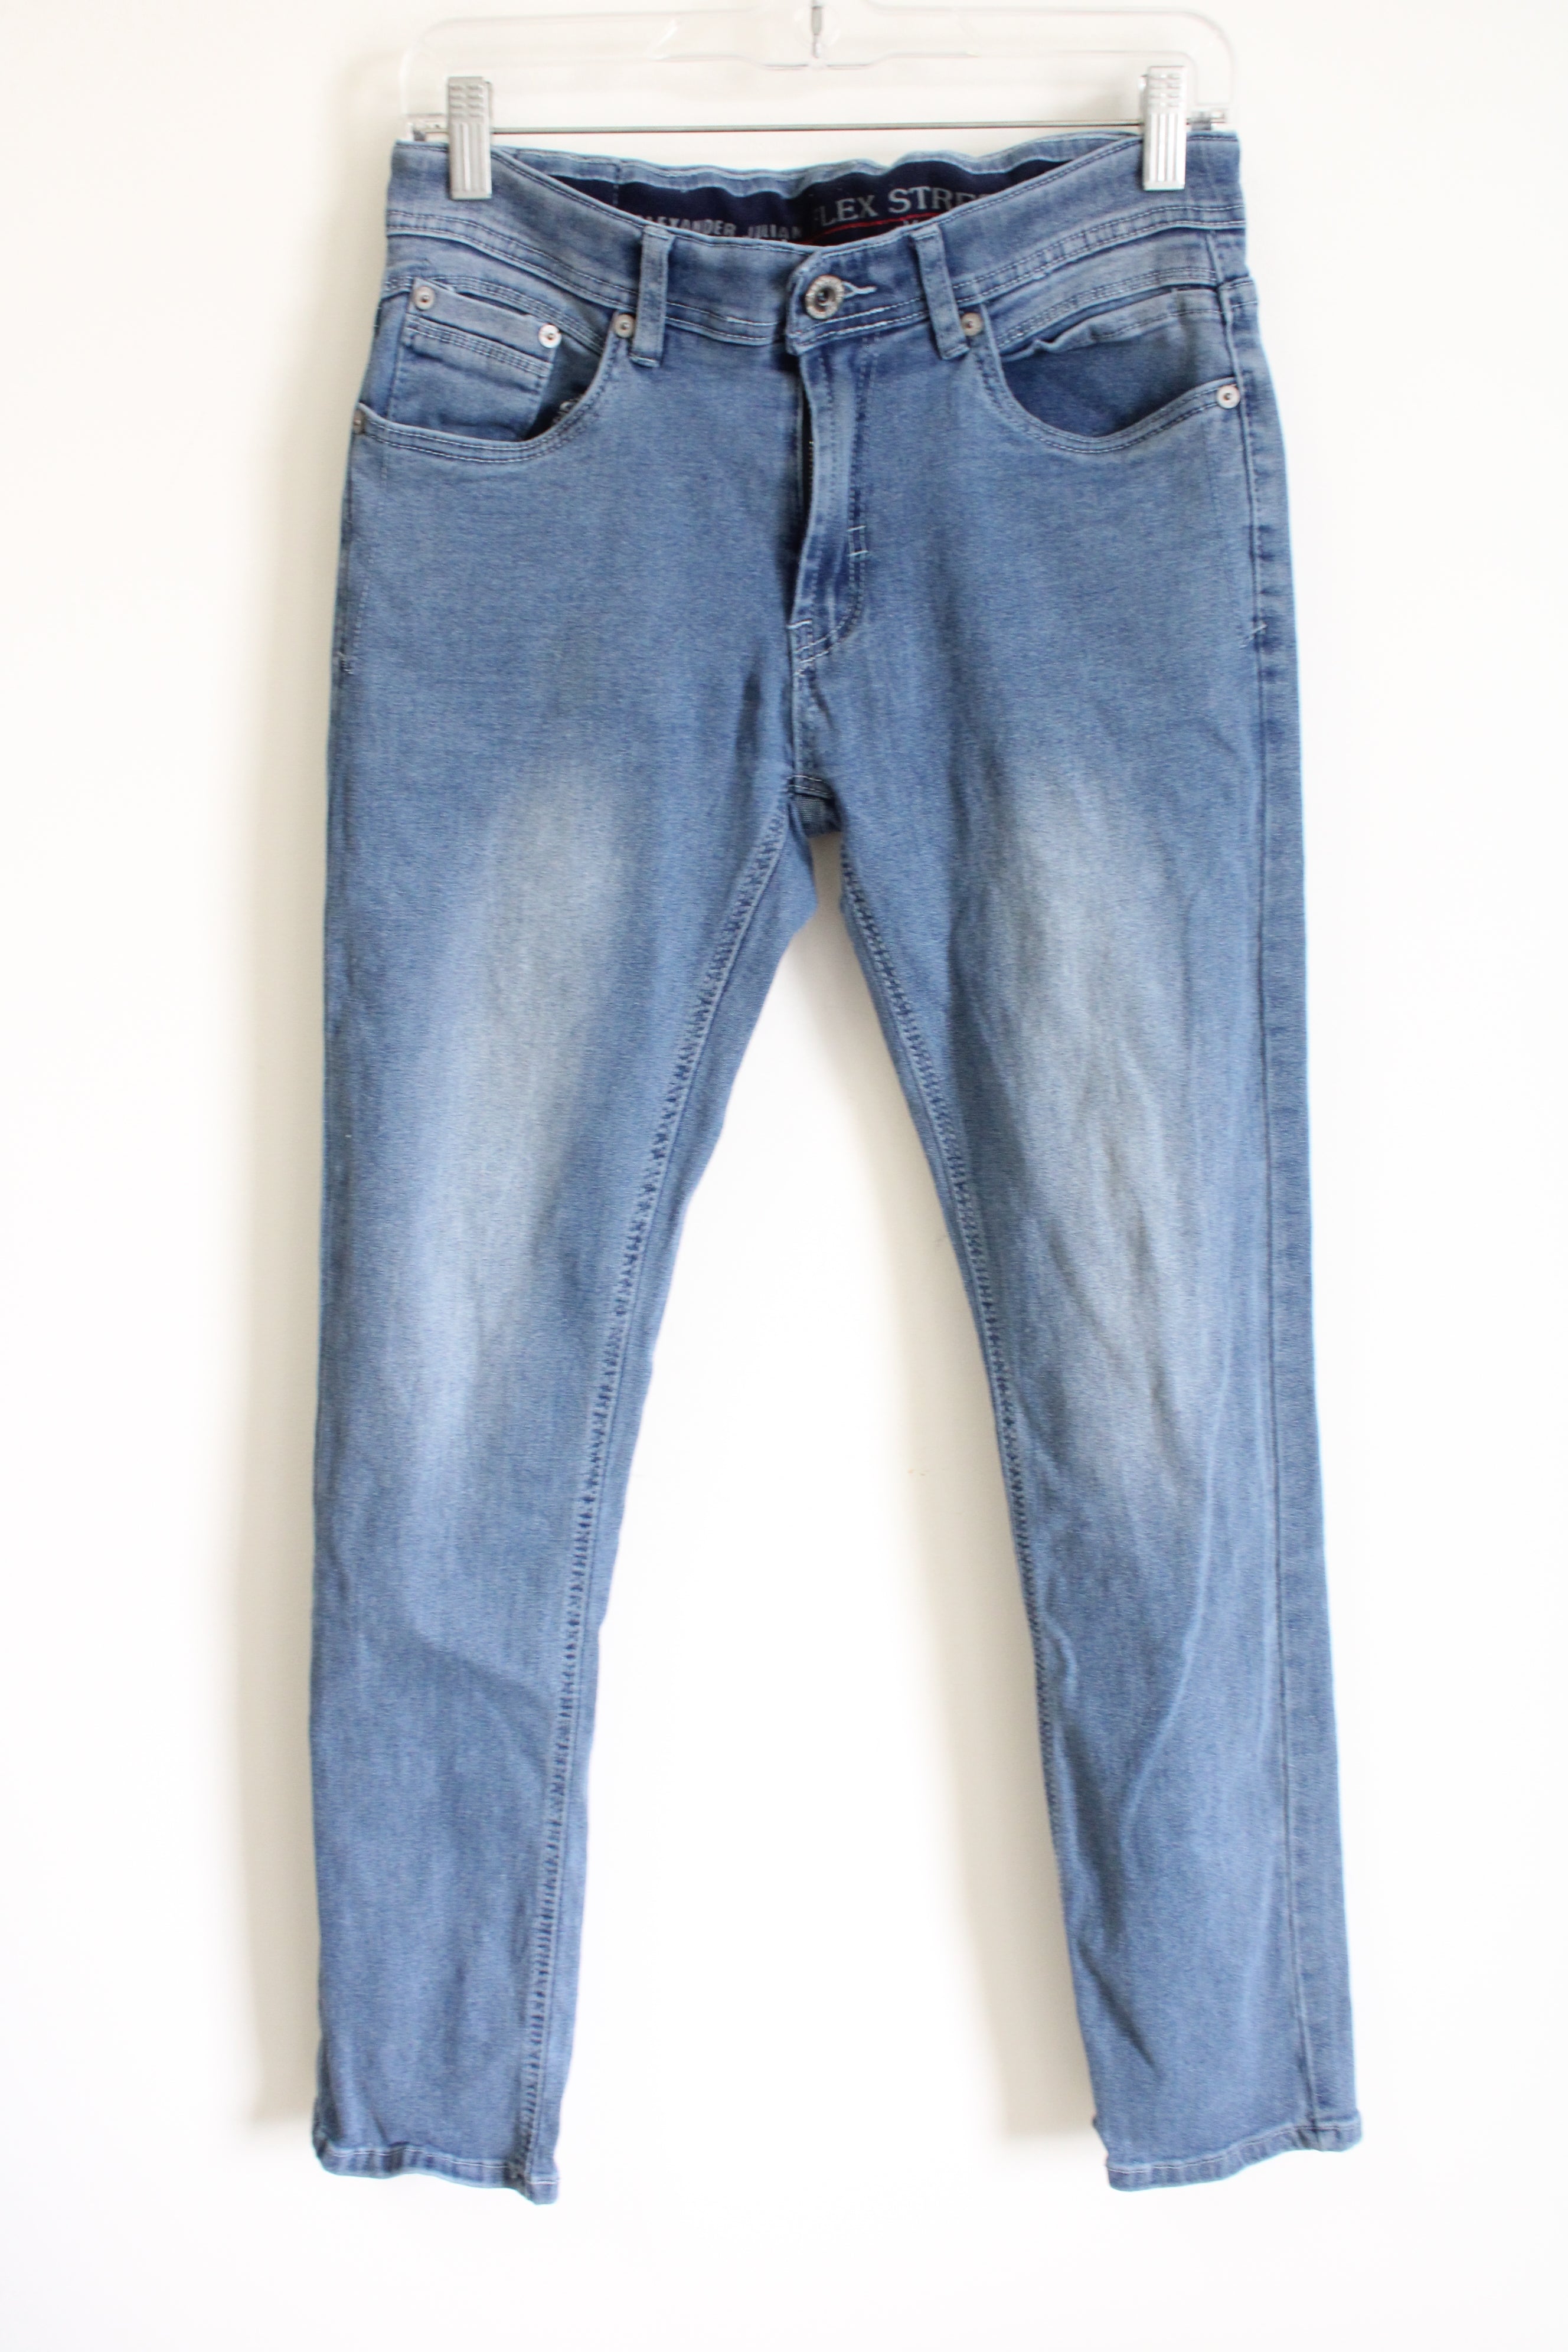 Alexander Julian Flex Stretch Blue Jeans | 30x30